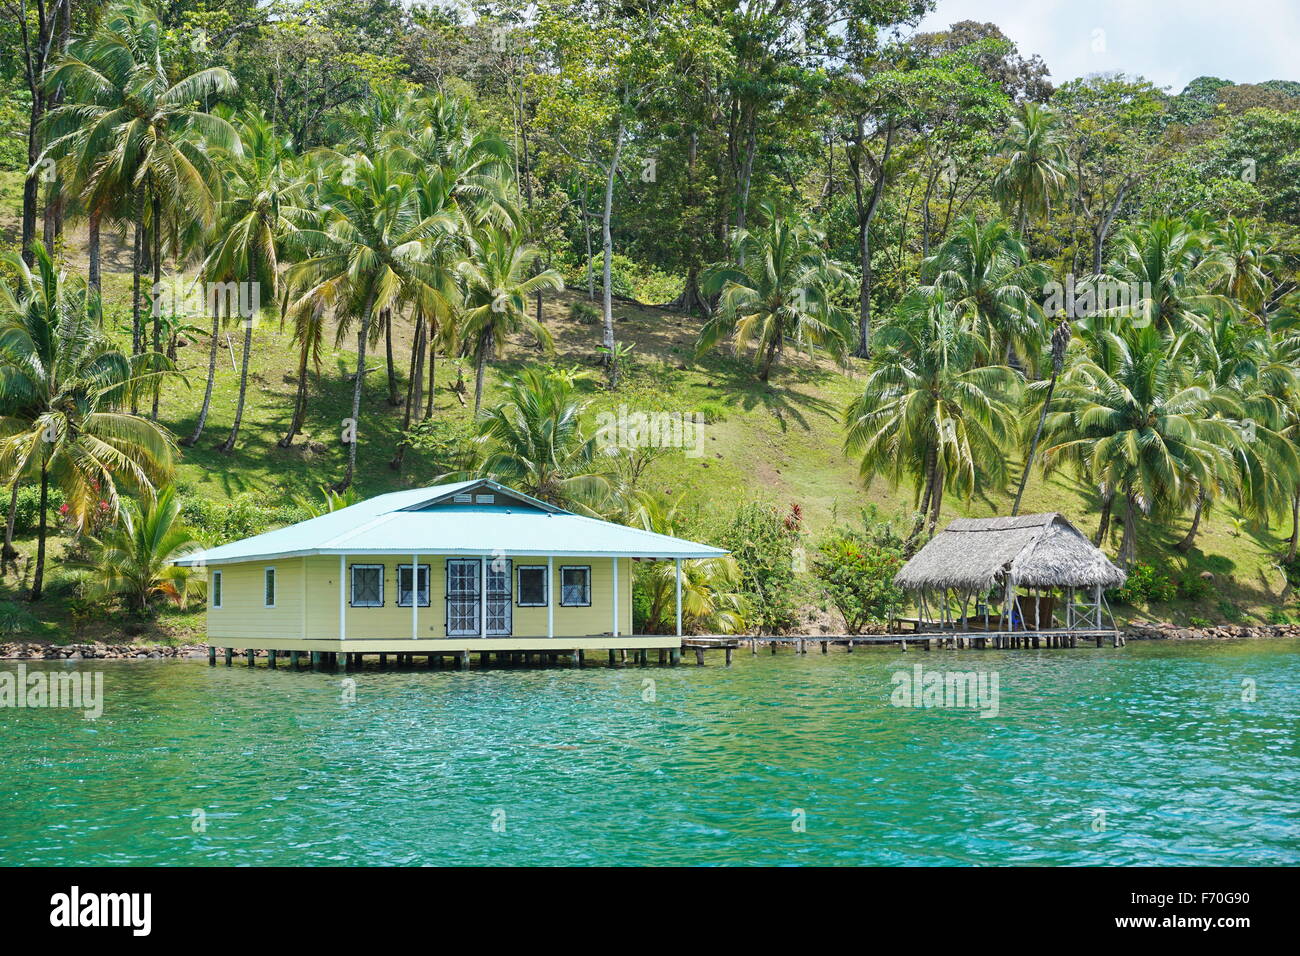 Casa rifugio e sull'acqua con palme di cocco sulla terra, Costa Caraibica di Panama, Bocas del Toro, America Centrale Foto Stock